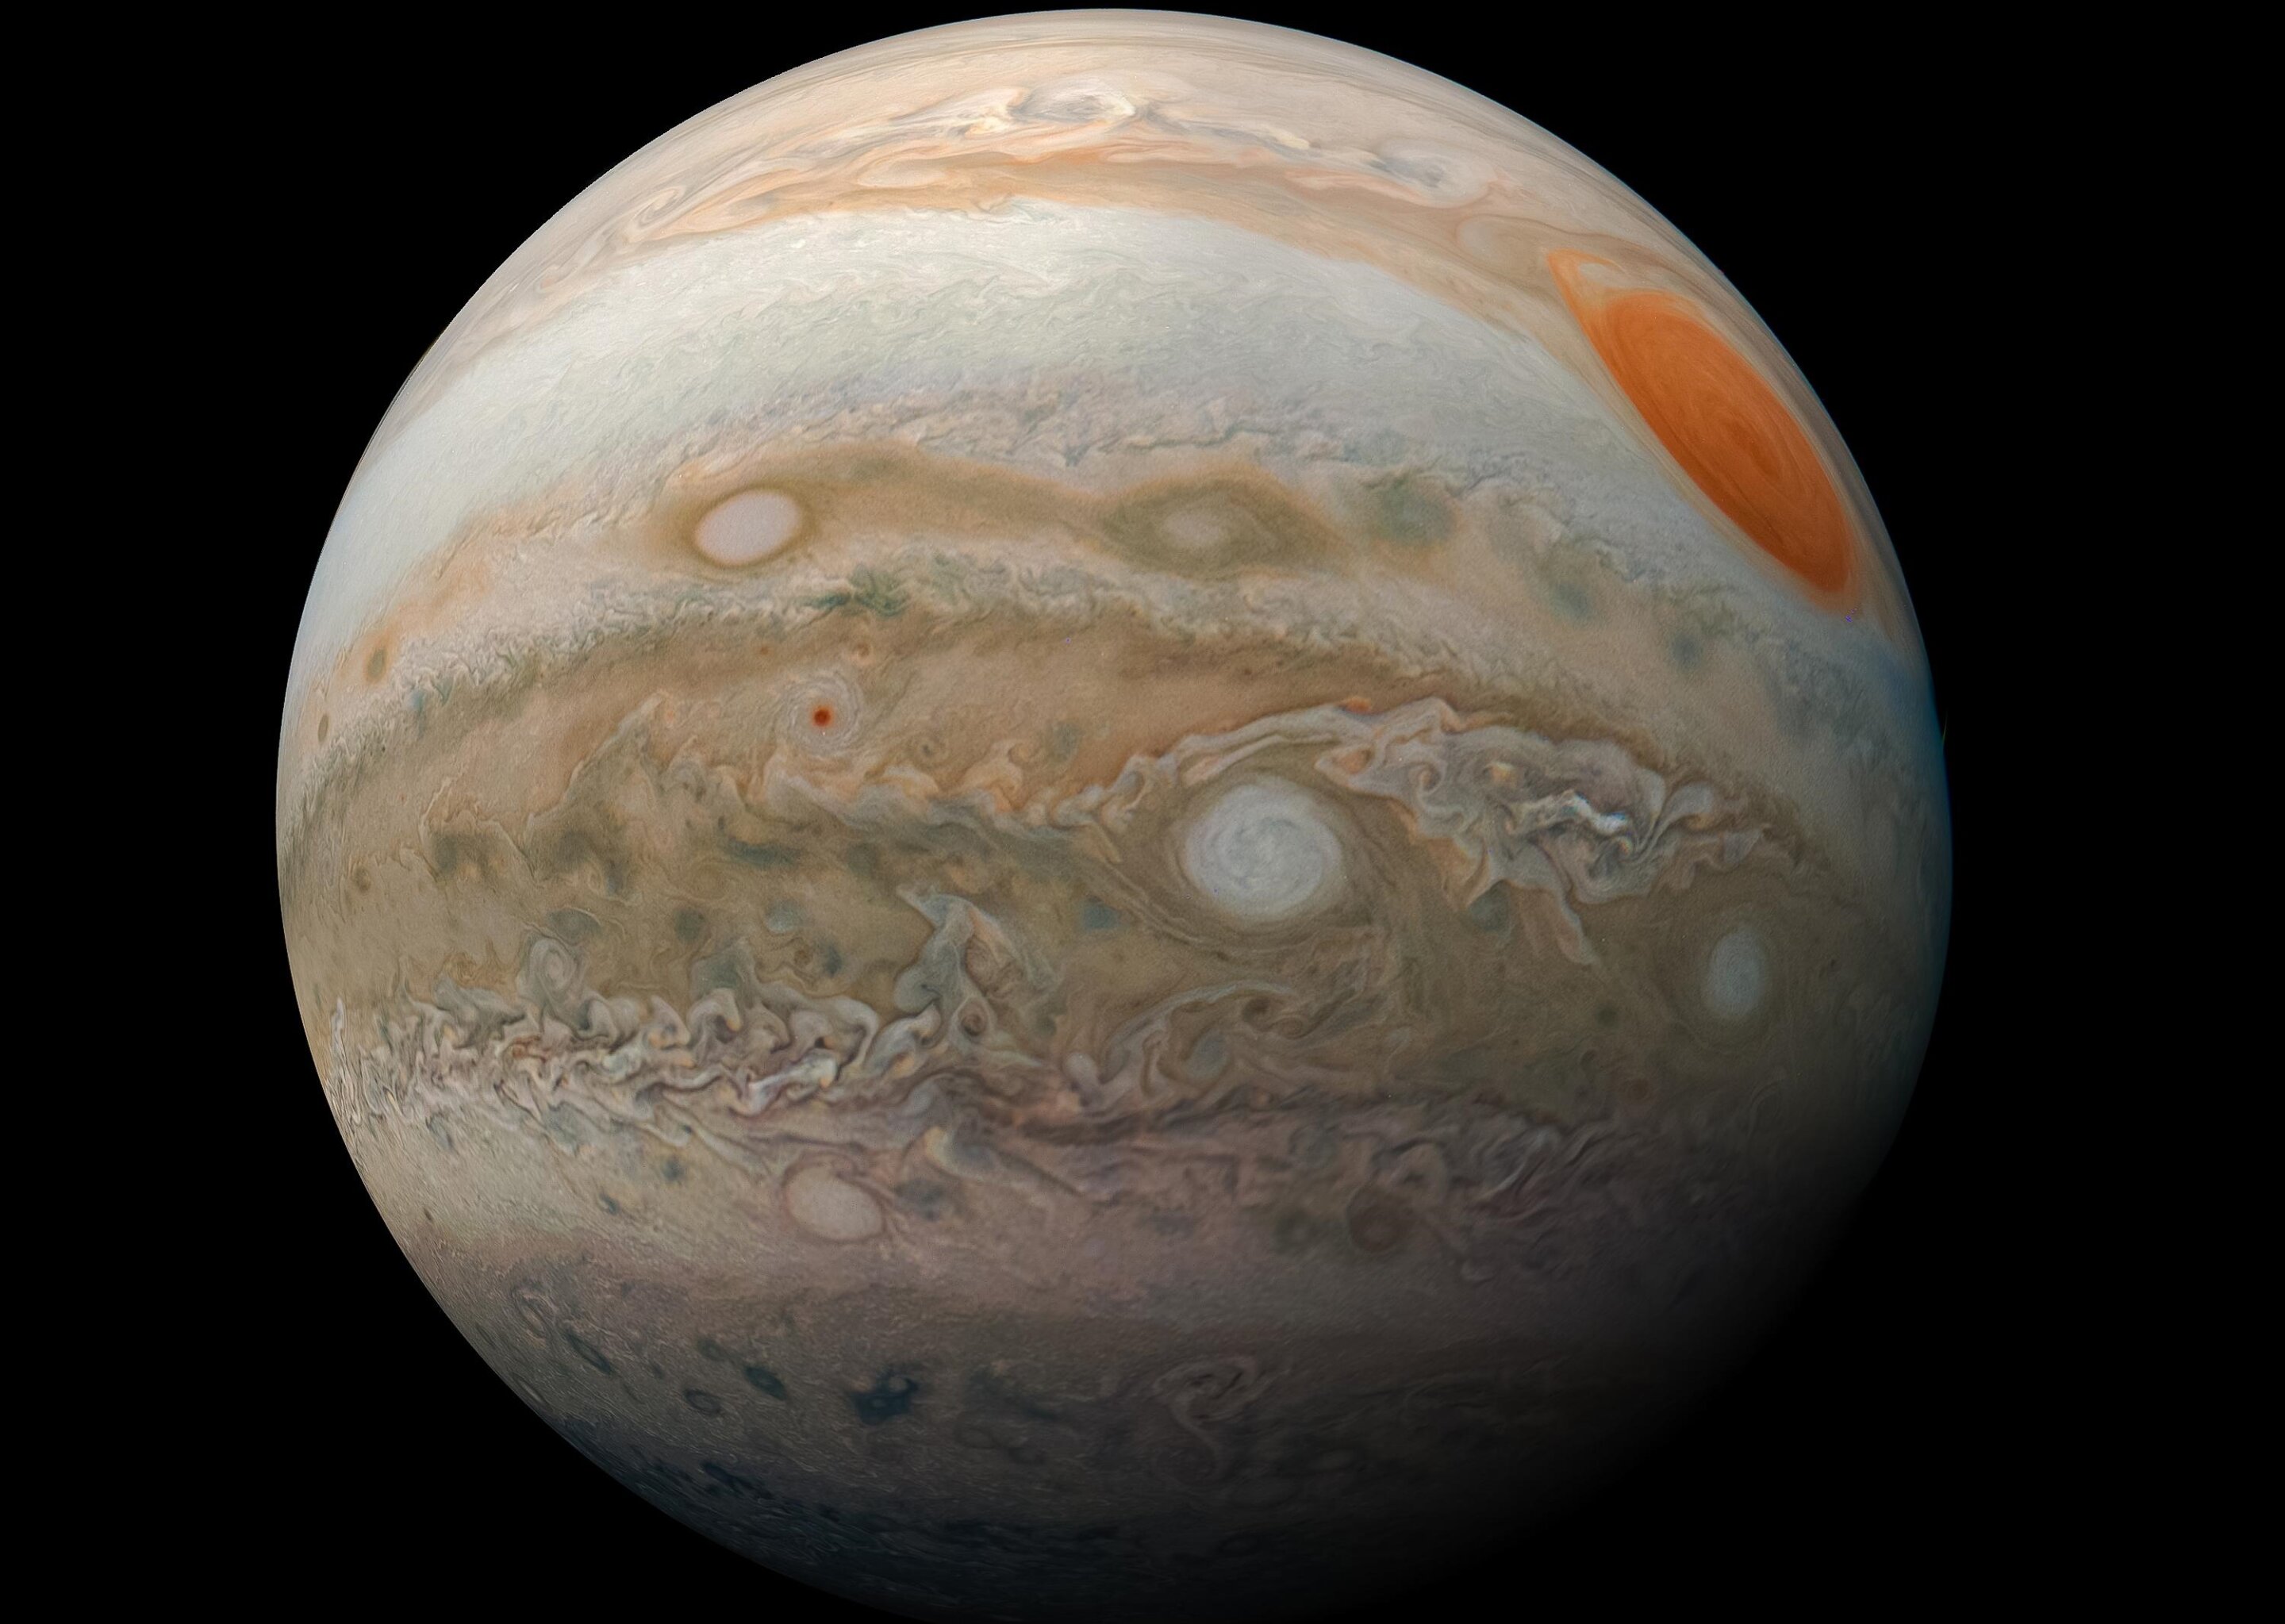 Более пристальный взгляд на историю происхождения Юпитера